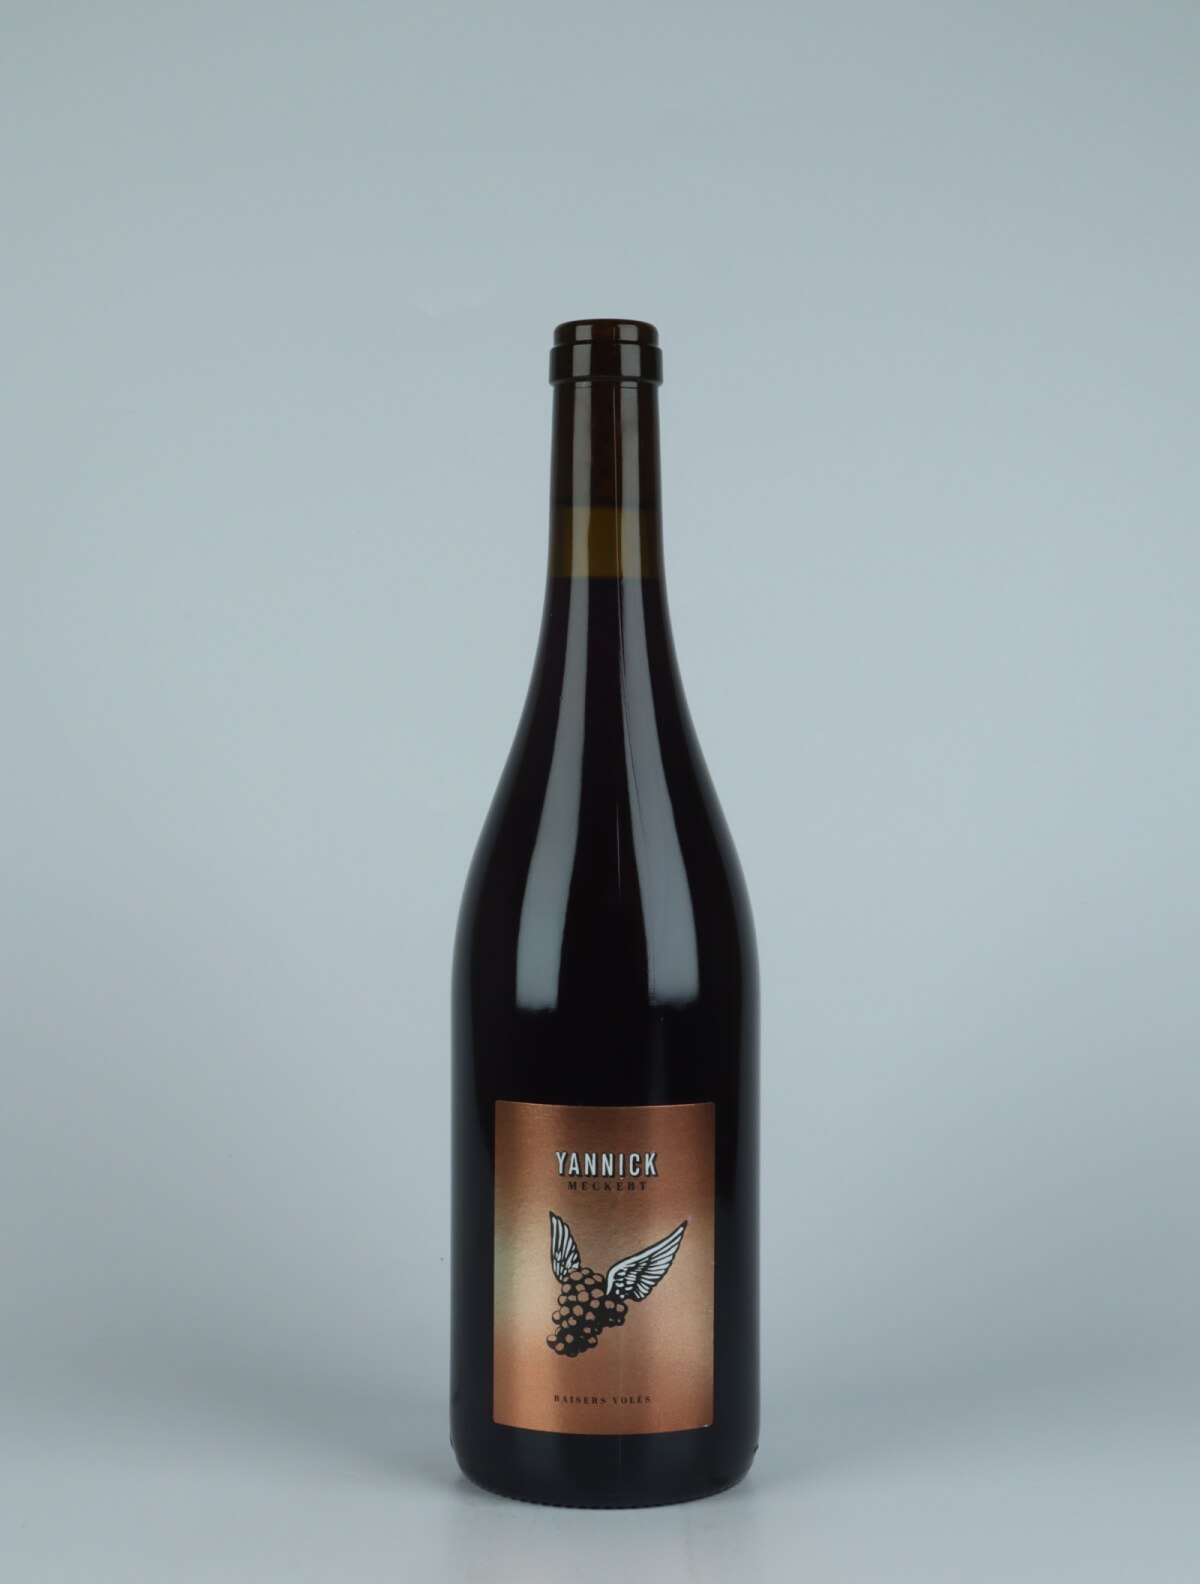 En flaske 2020 Pinot Noir - Baisers Volés Rødvin fra Yannick Meckert, Alsace i Frankrig